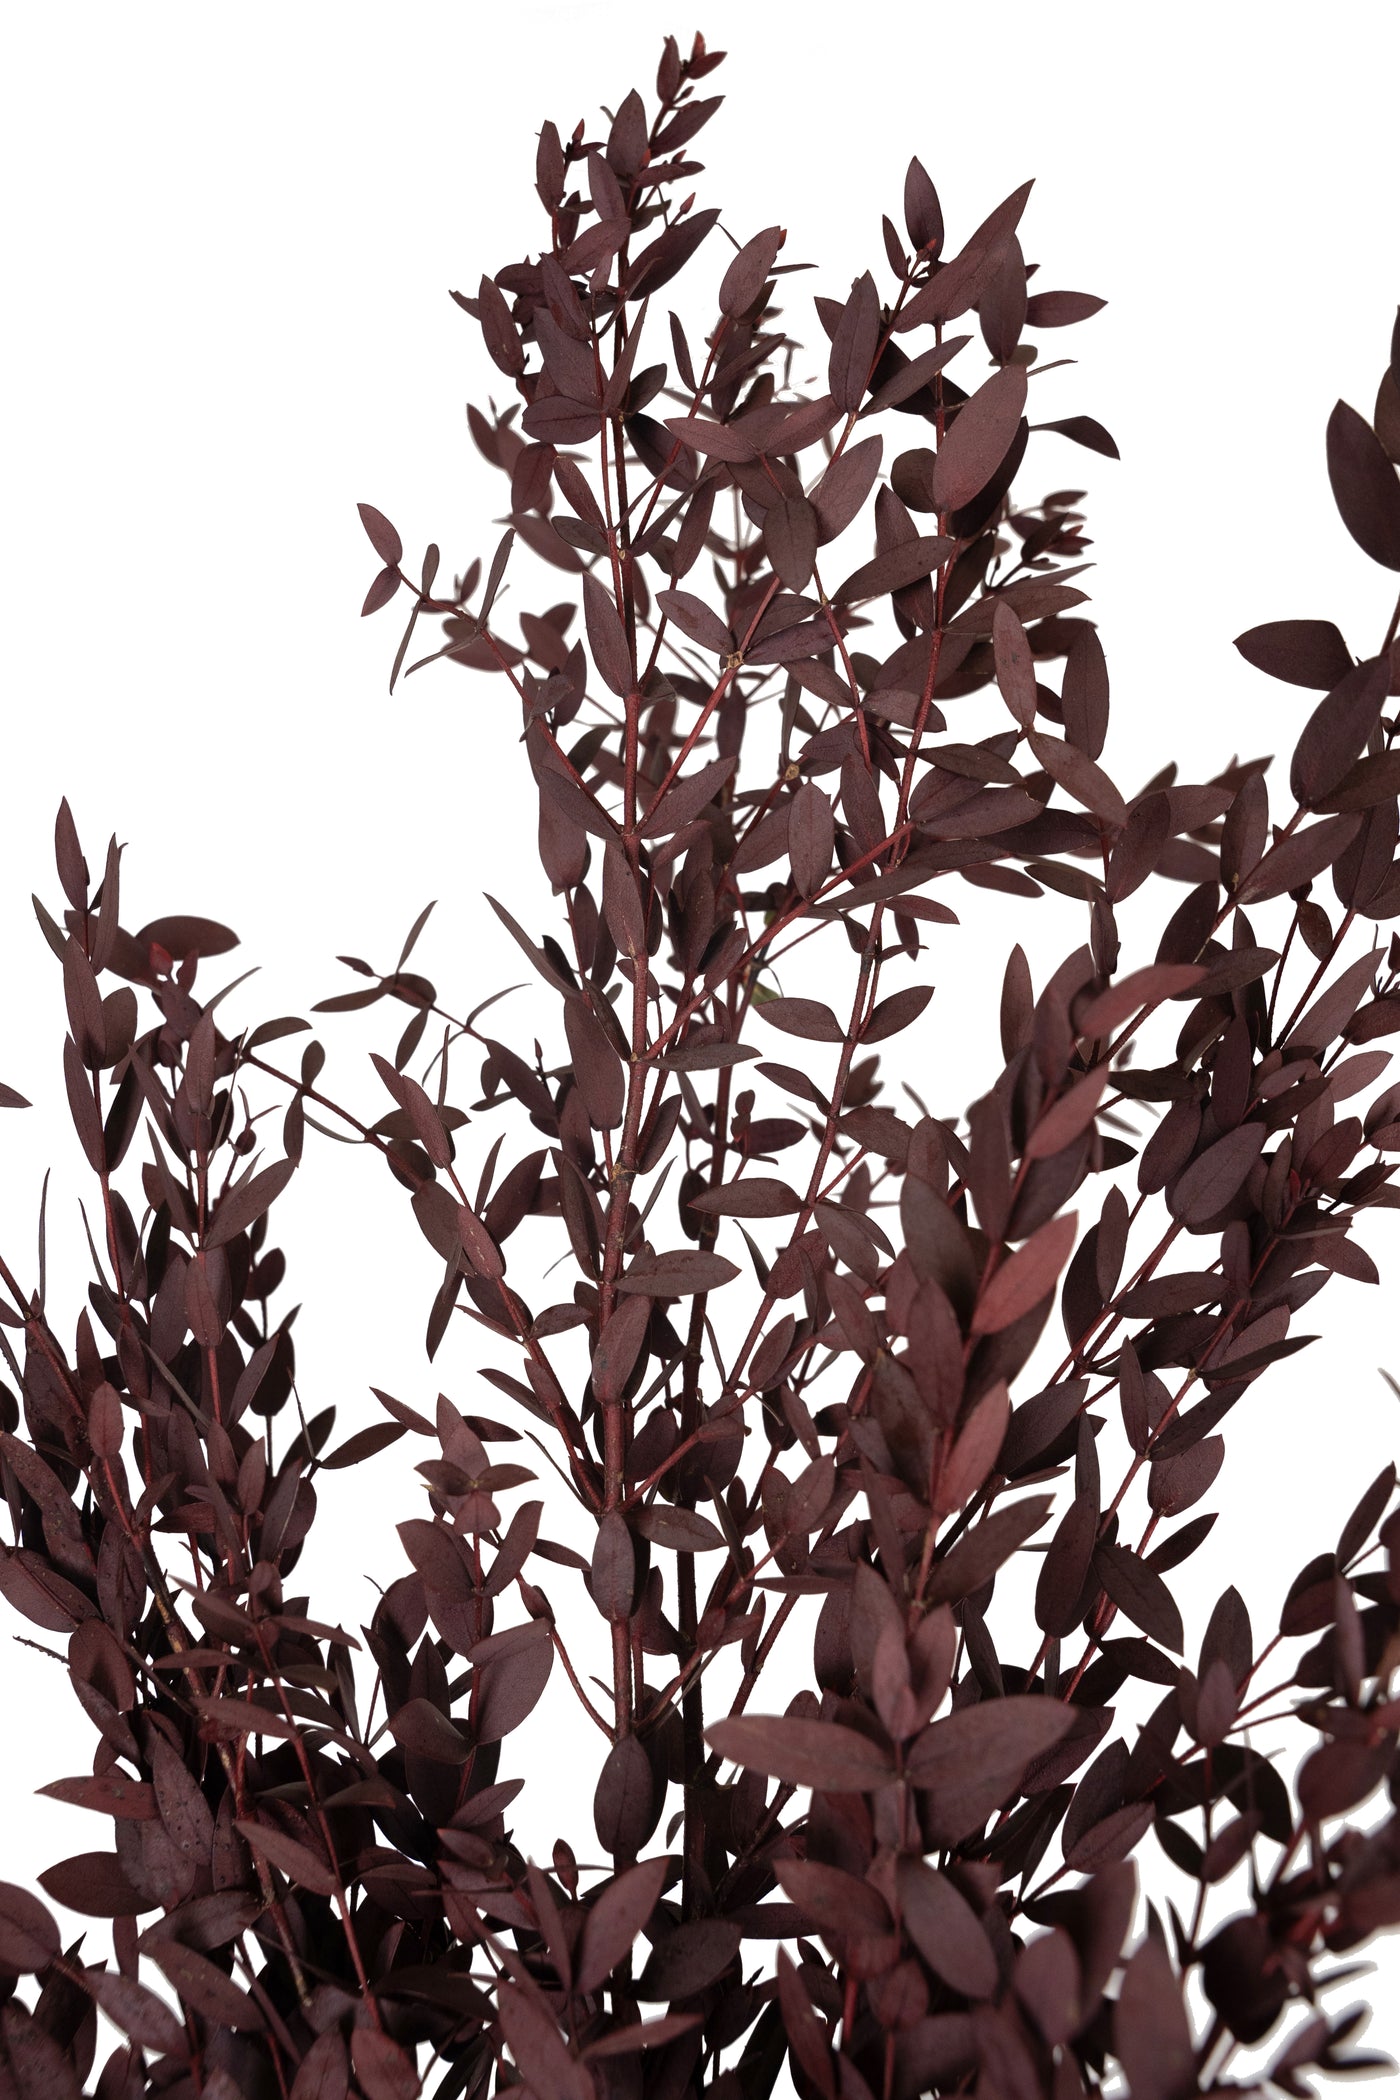 Crenguta conservata de Eucalipt parvifolia H60-70 cm. rosu